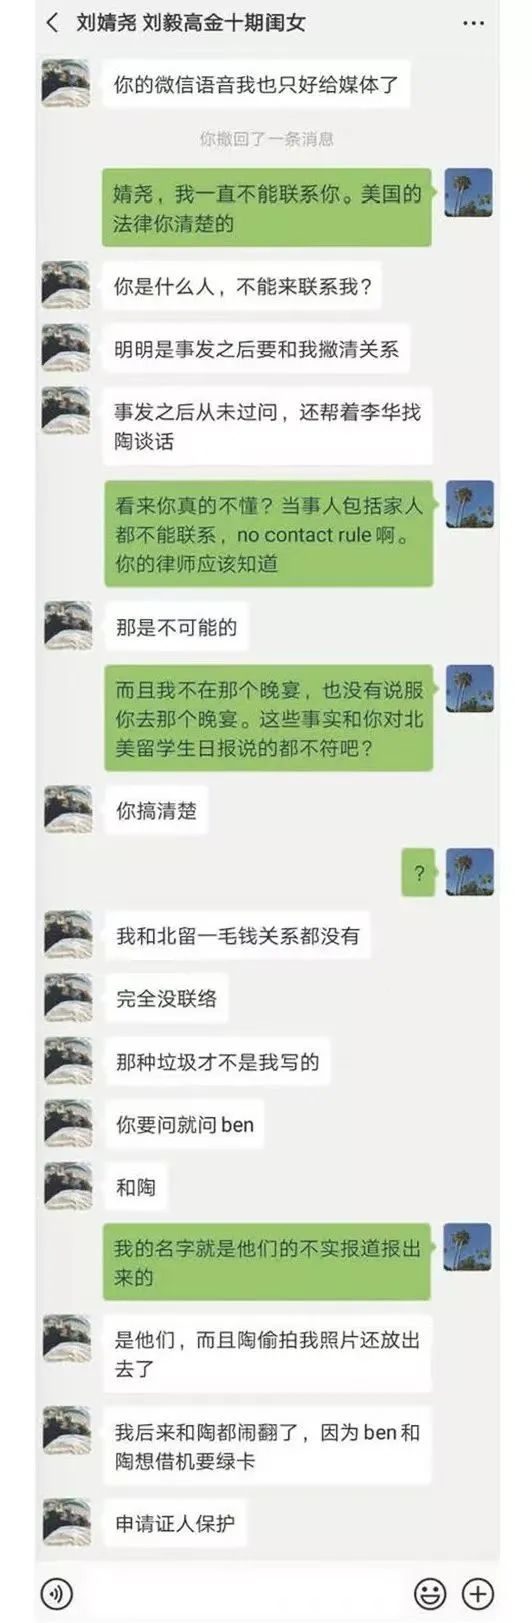 明州刘强东案大反转 从 “强奸” 到 “误会”